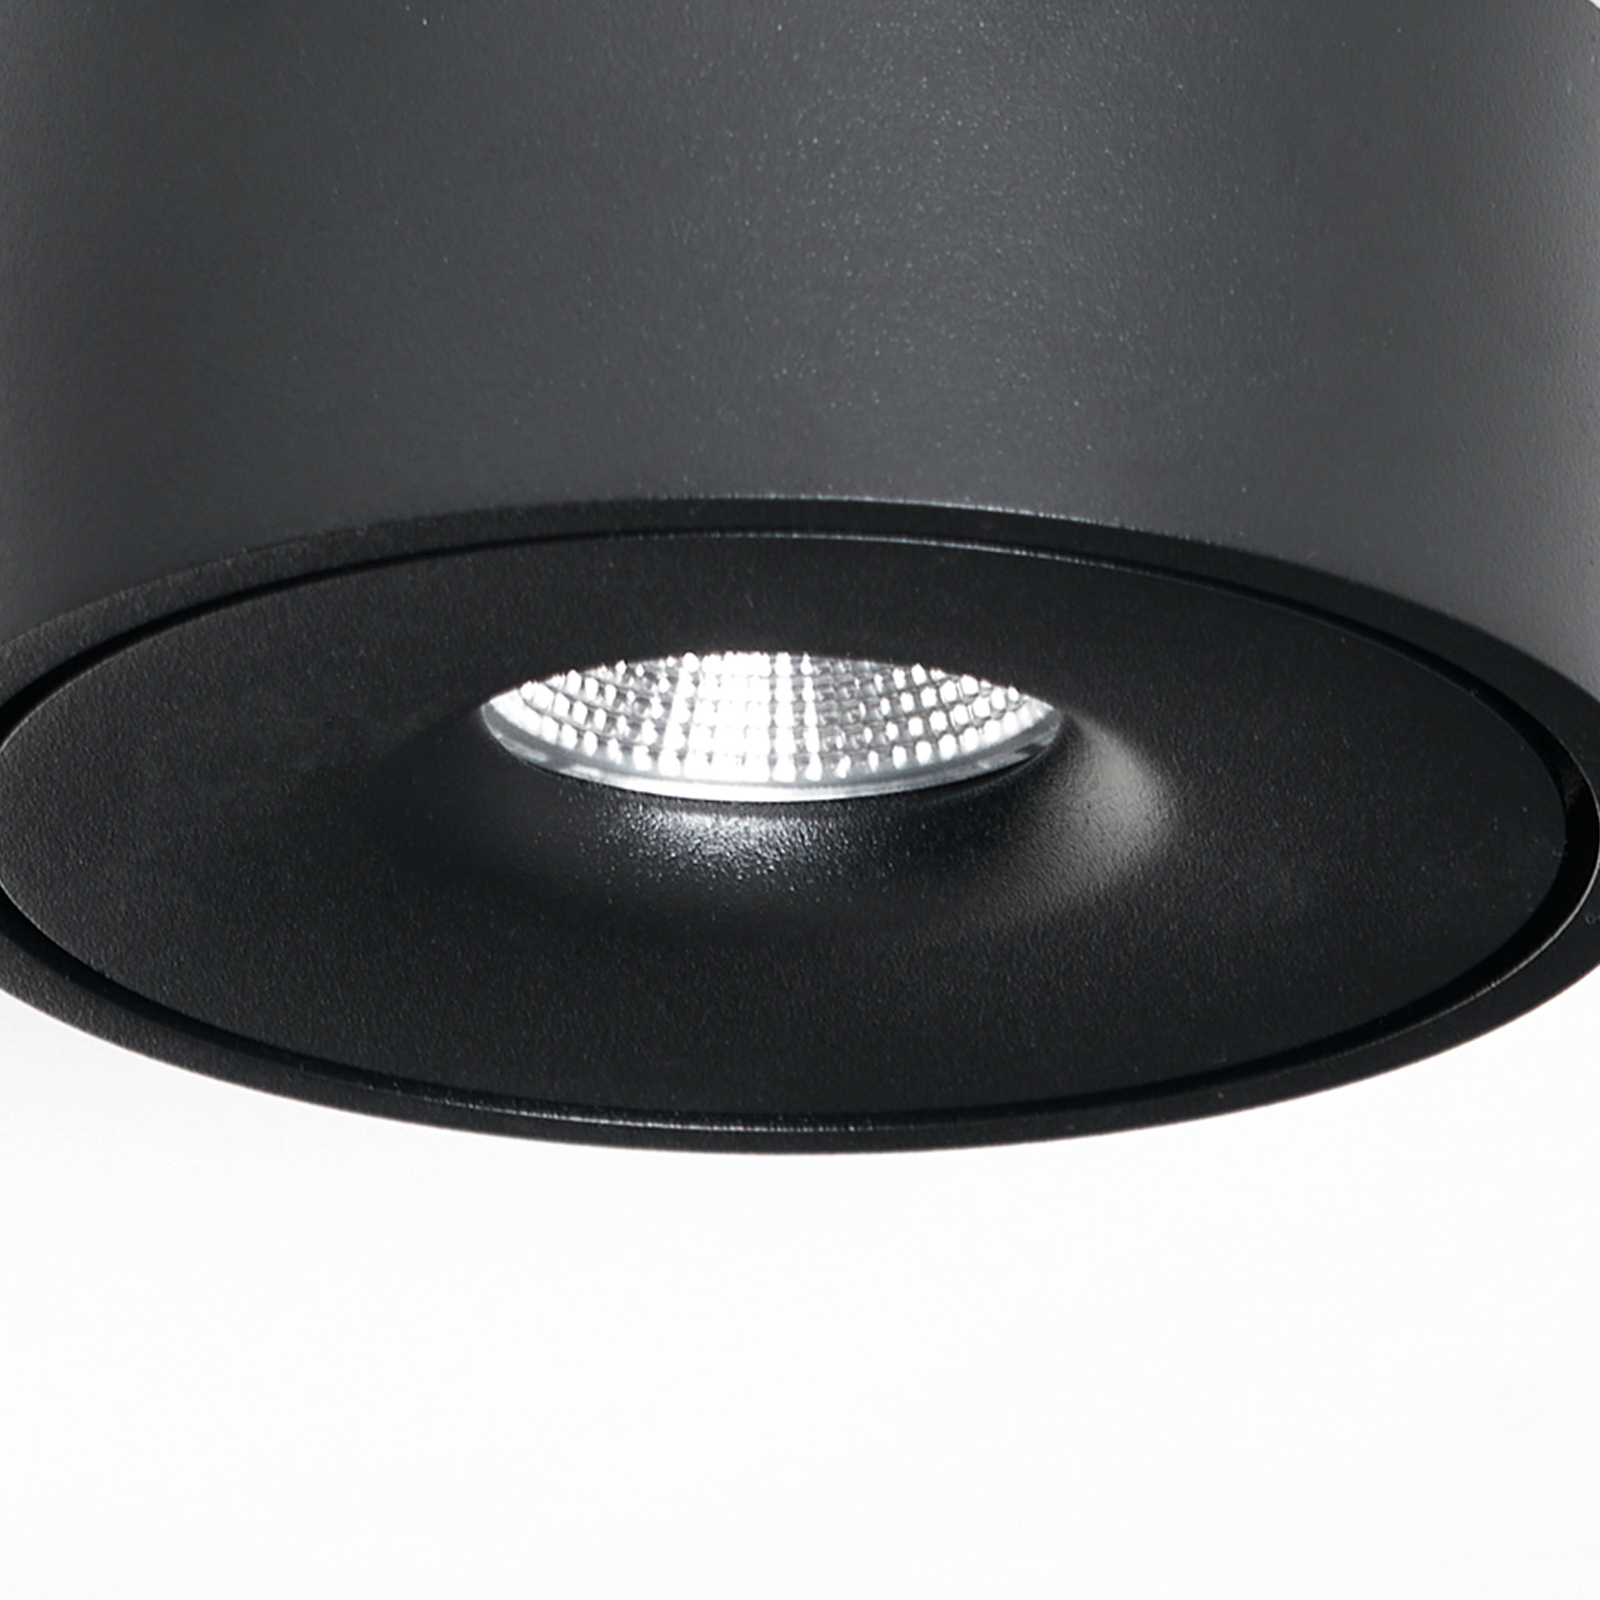 Arcchio Rotari lámpara de techo LED, up & down, negro